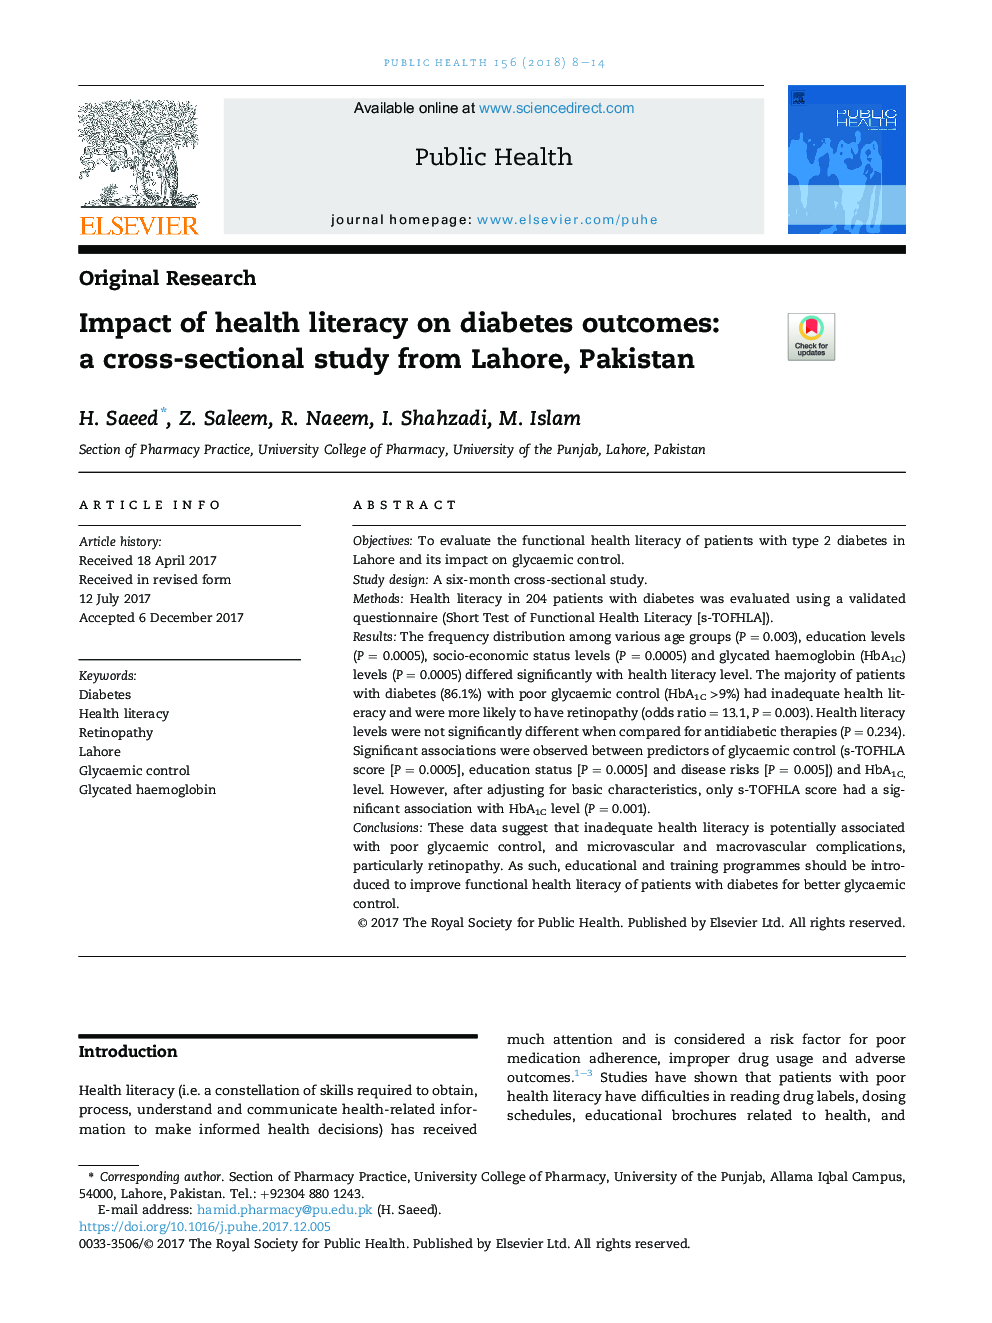 تاثیر سواد بهداشتی بر نتایج دیابت: یک مطالعه مقطعی از لاهور، پاکستان 